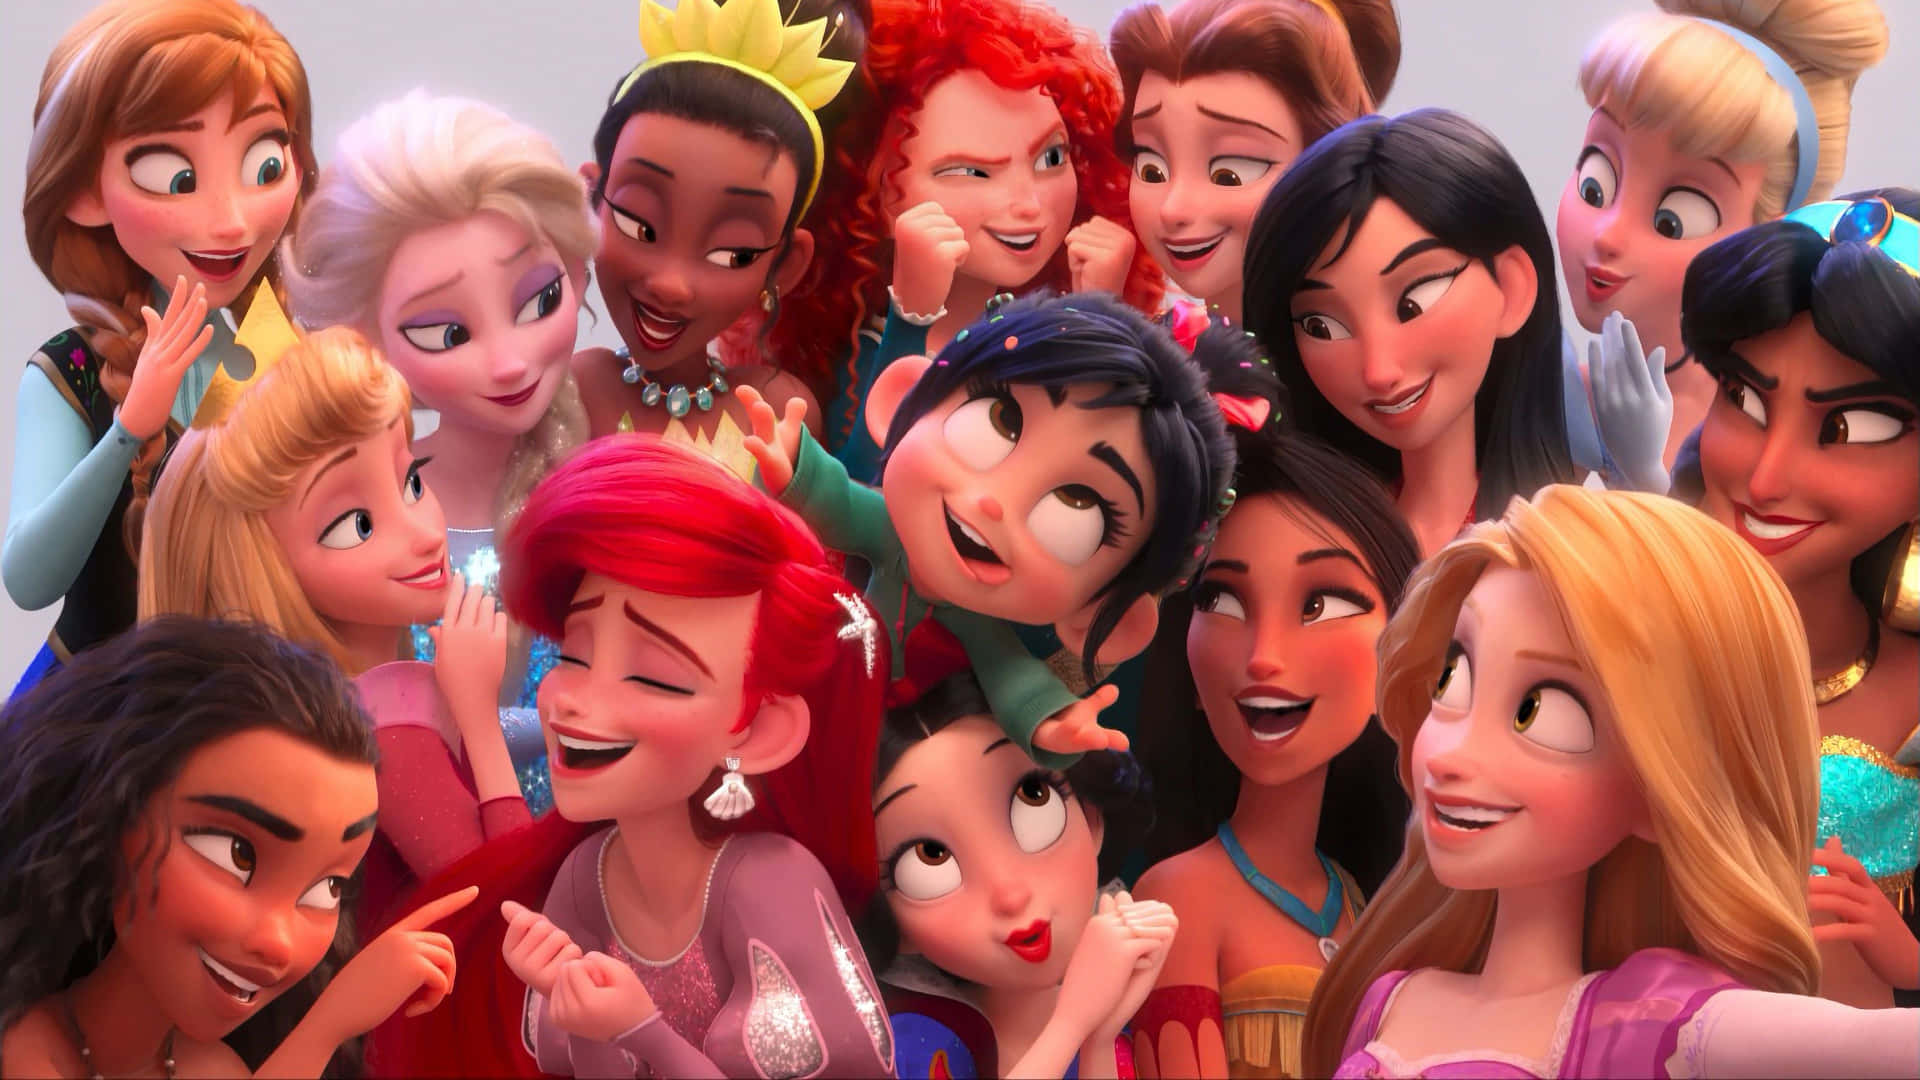 Oplev Disney Magi i 4K opløsning! Wallpaper